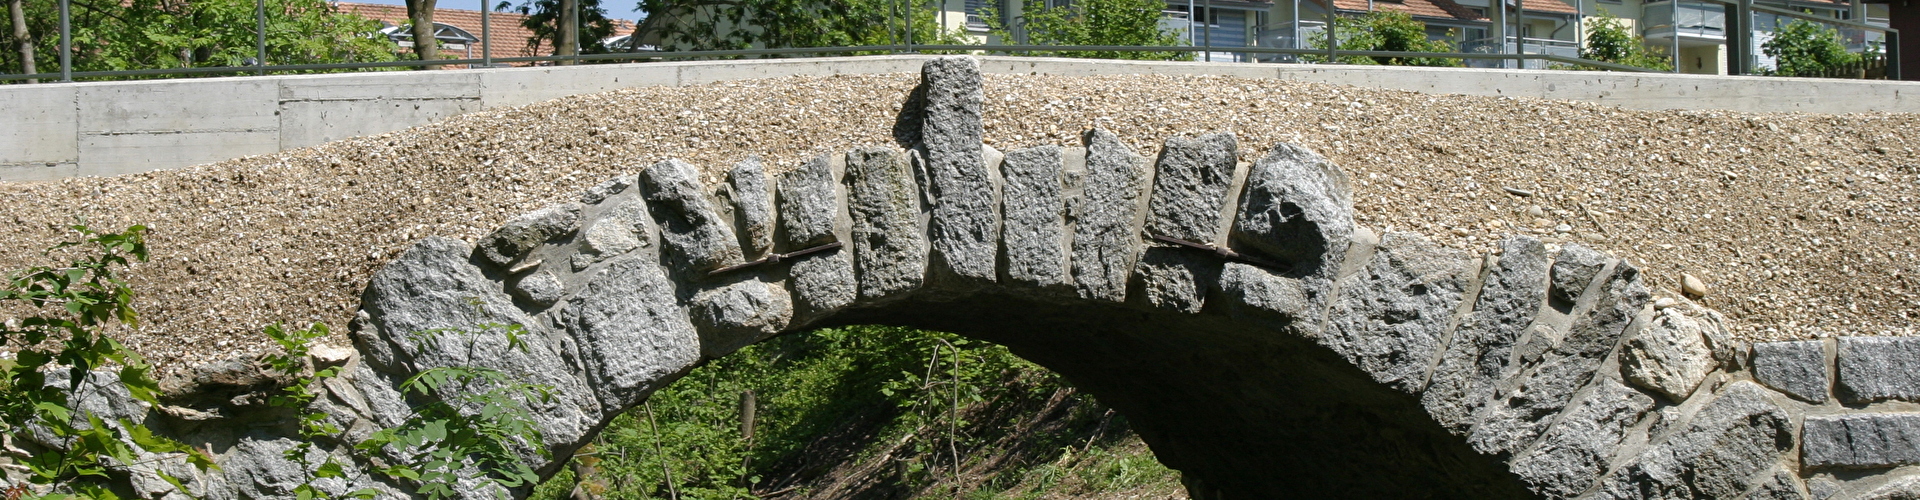 Surenbrücke